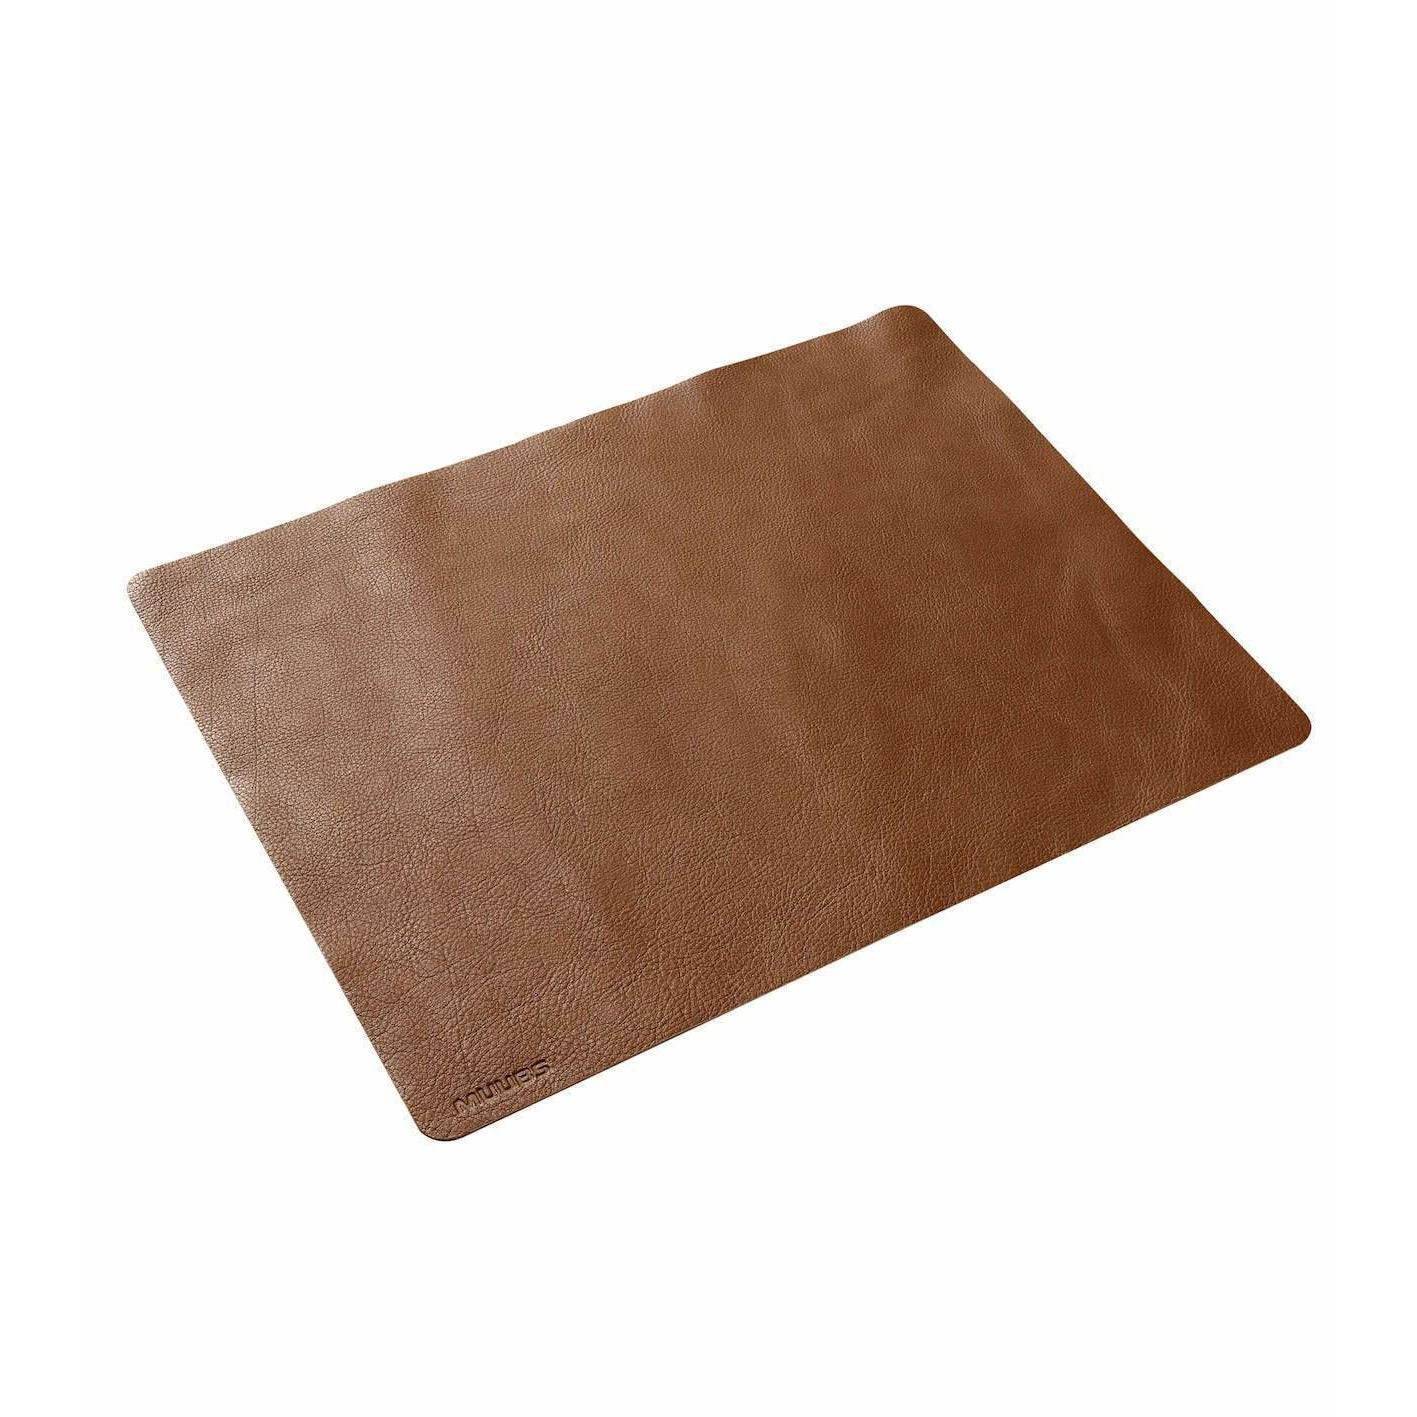 MUUBS Camou täcker brunt brunt läder, 45 cm